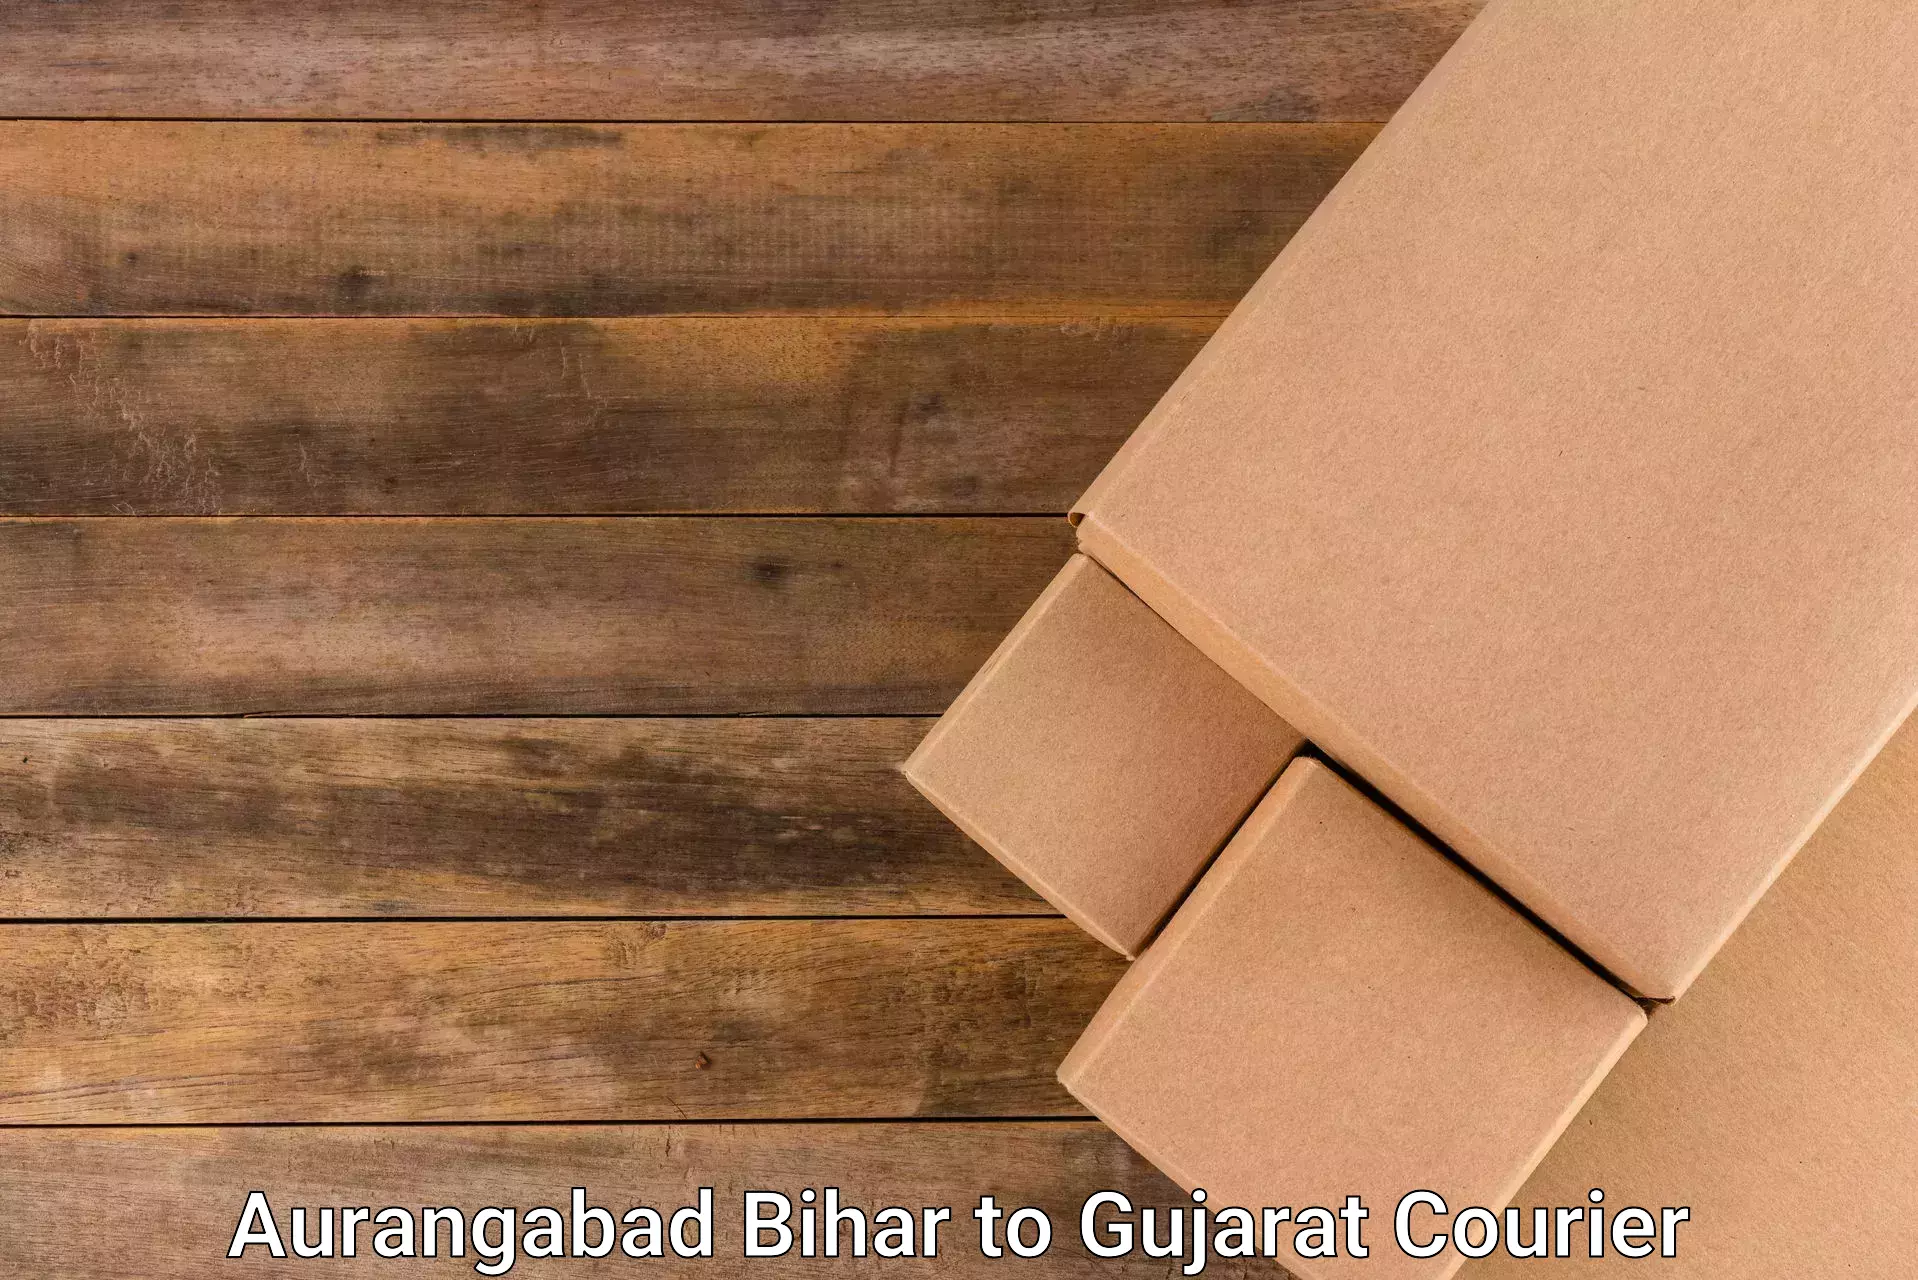 Courier app Aurangabad Bihar to Dharmasala